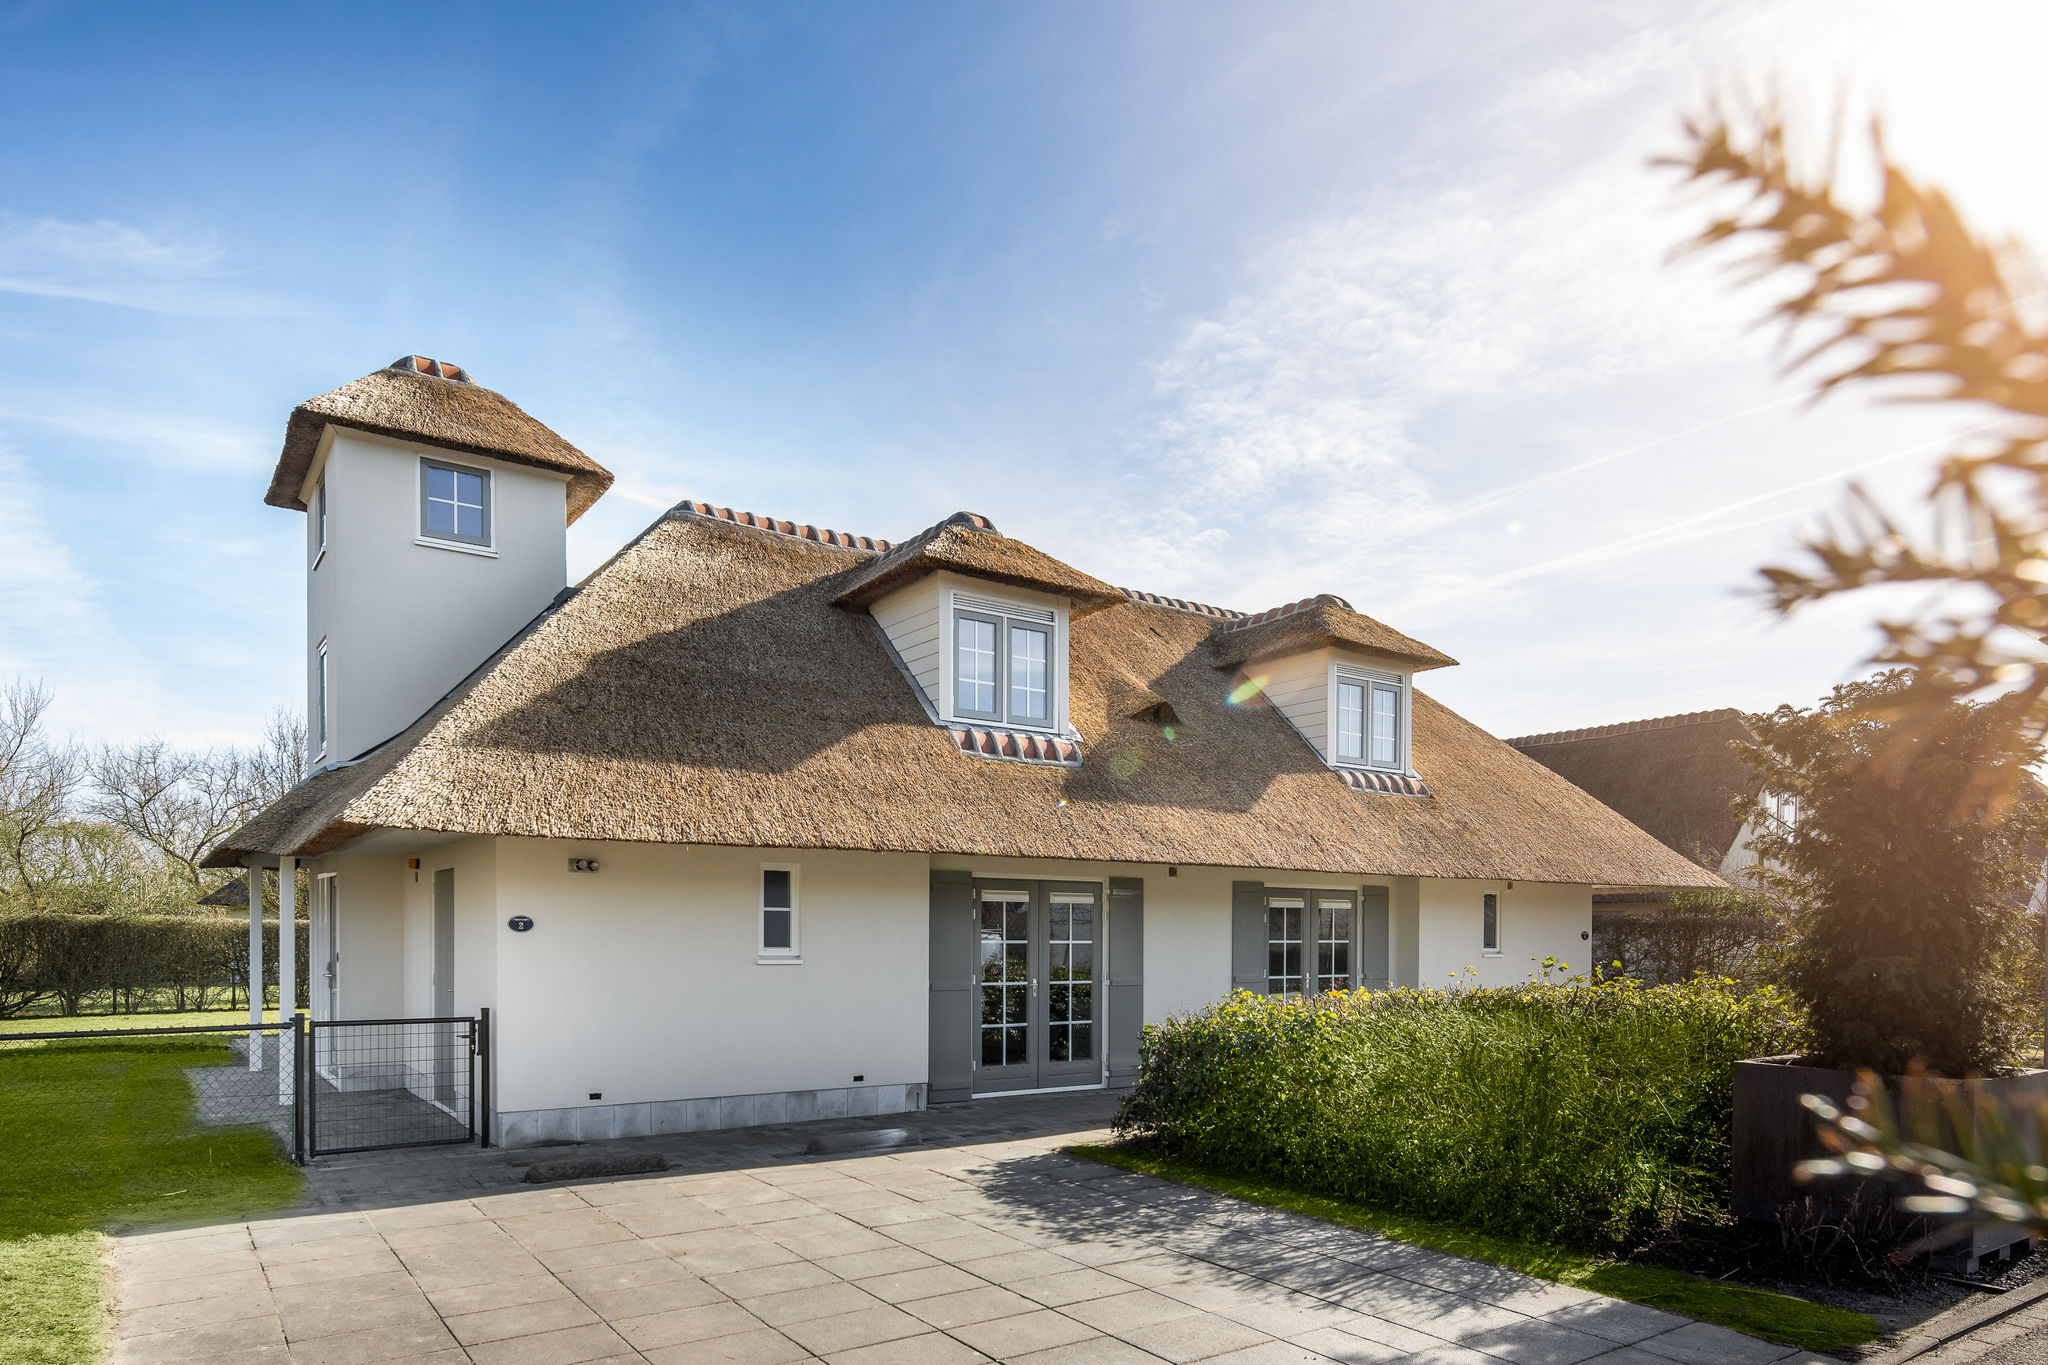 Gerestylde ruime villa met een ligbad in Domburg